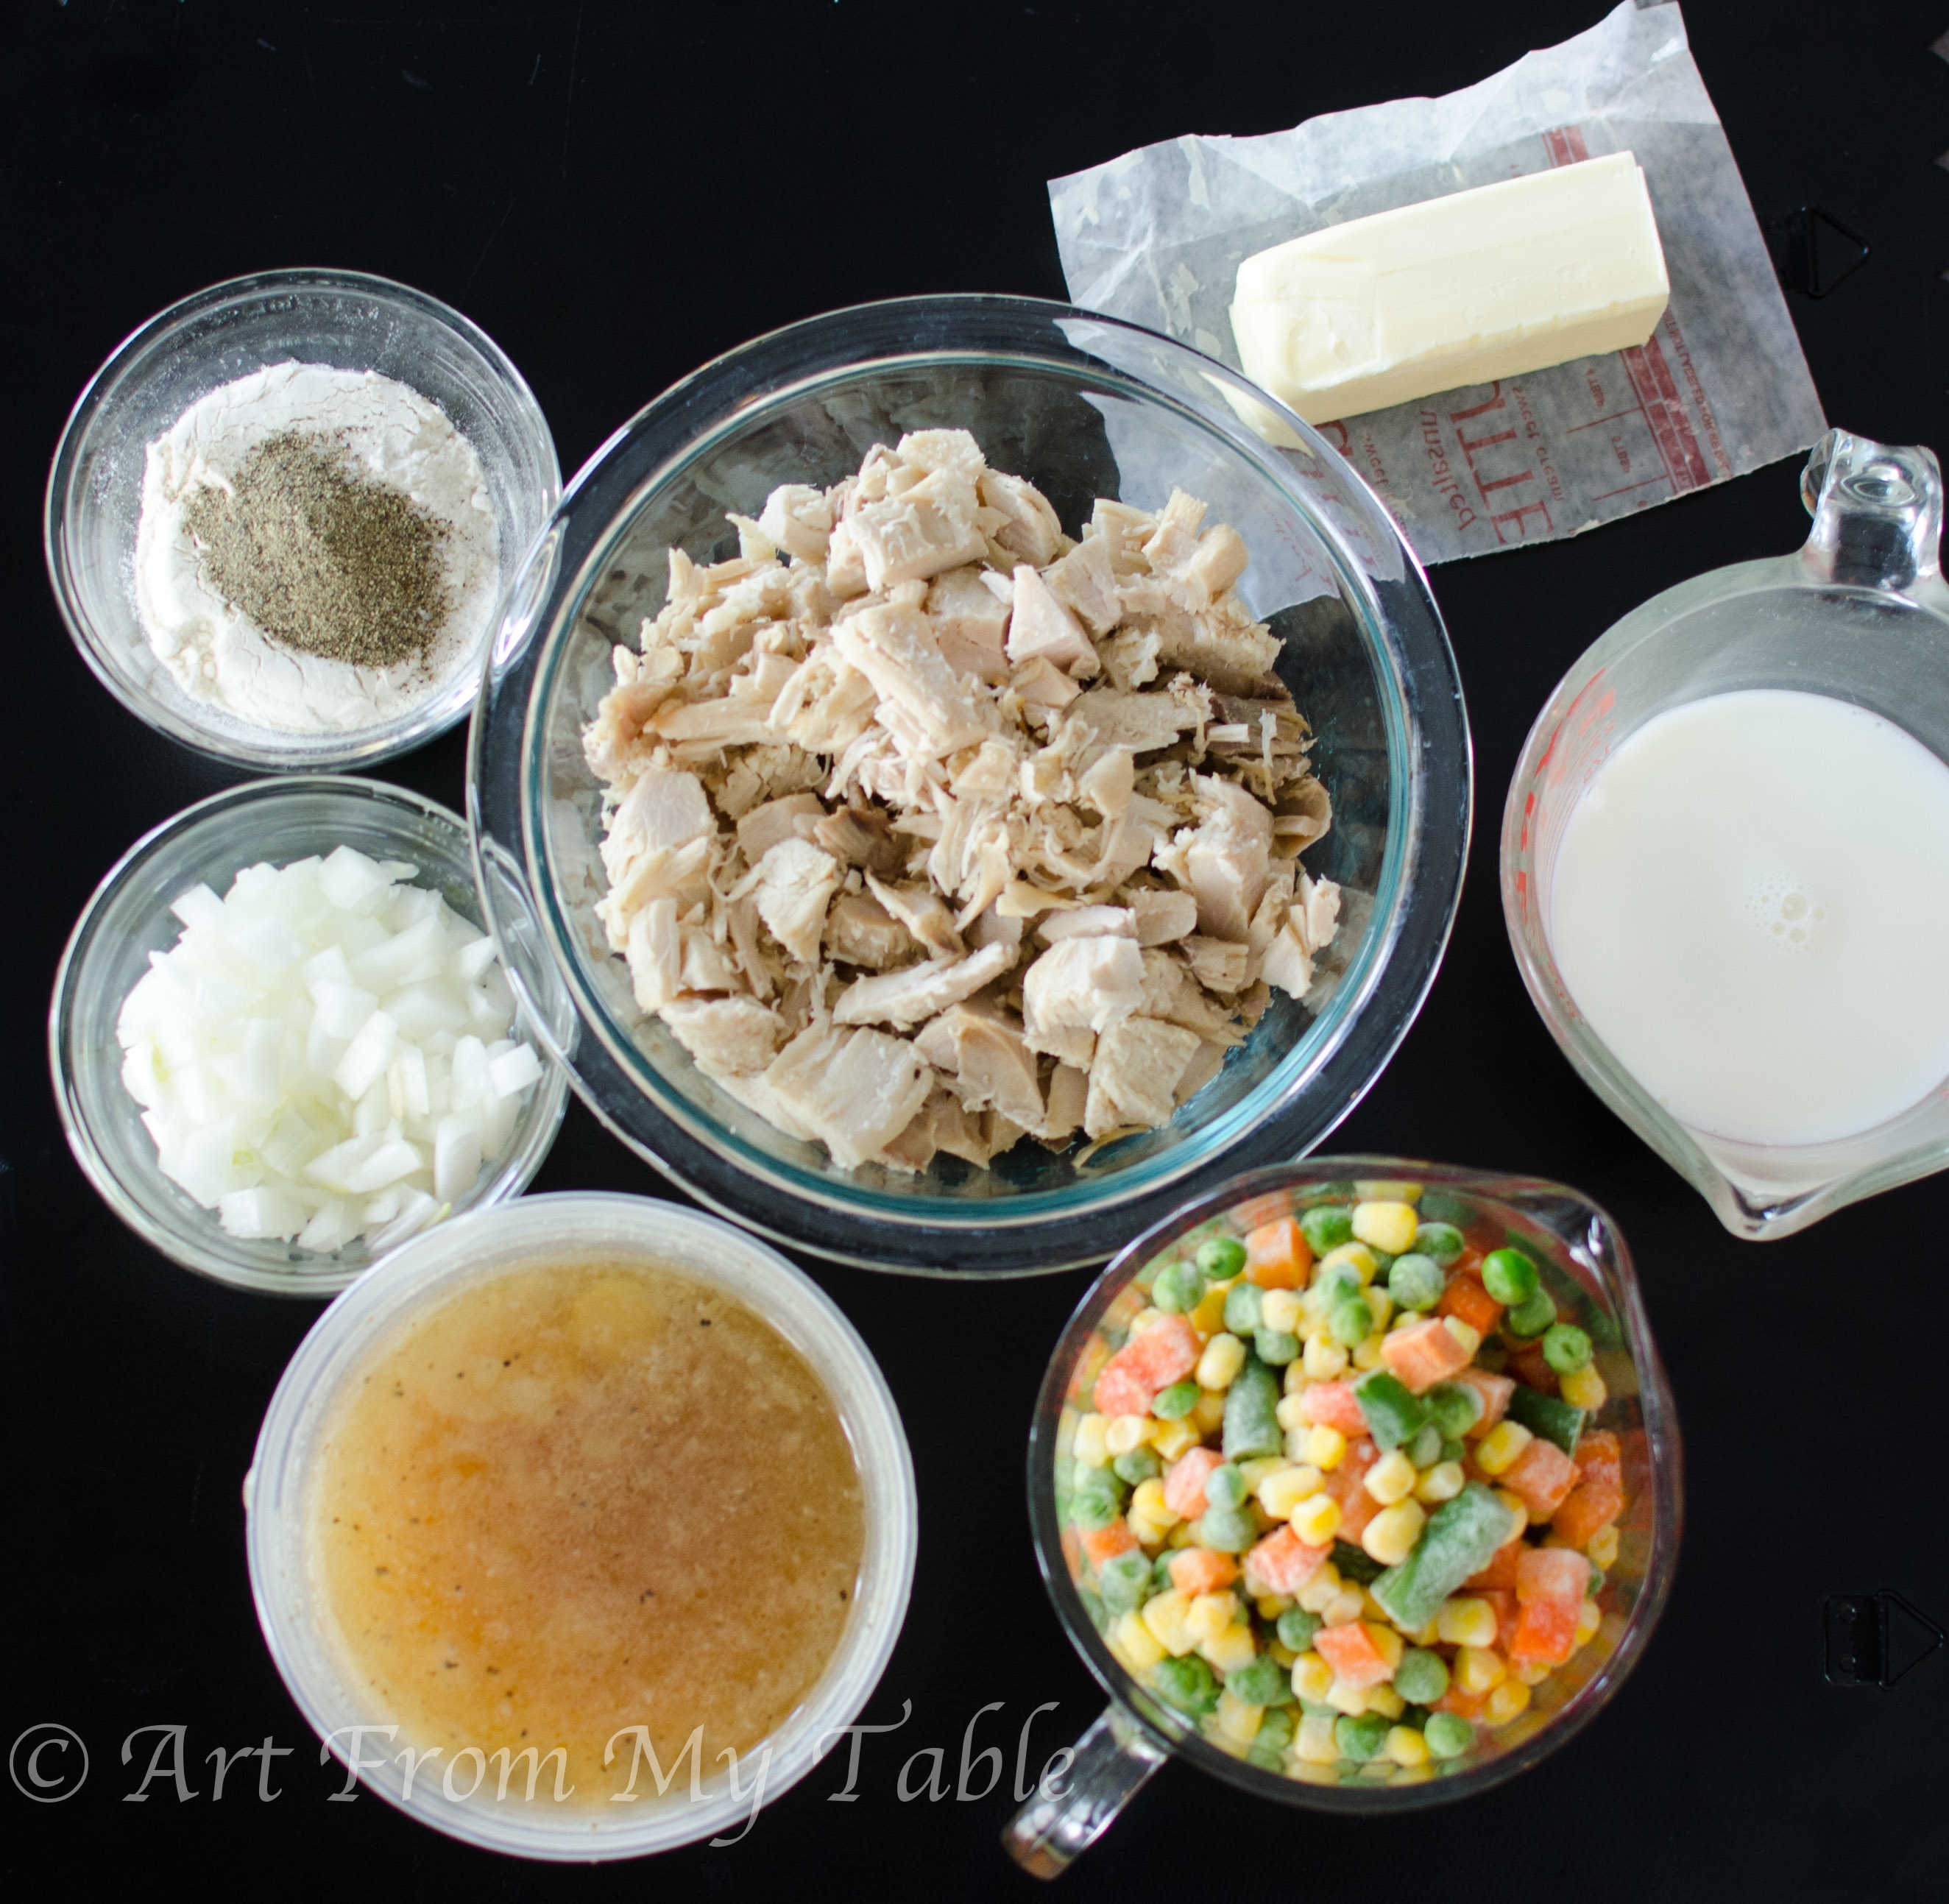 Ingredients for turkey pot pie - turkey, butter, milk, frozen vegetables, broth, onion, salt, pepper and flour.